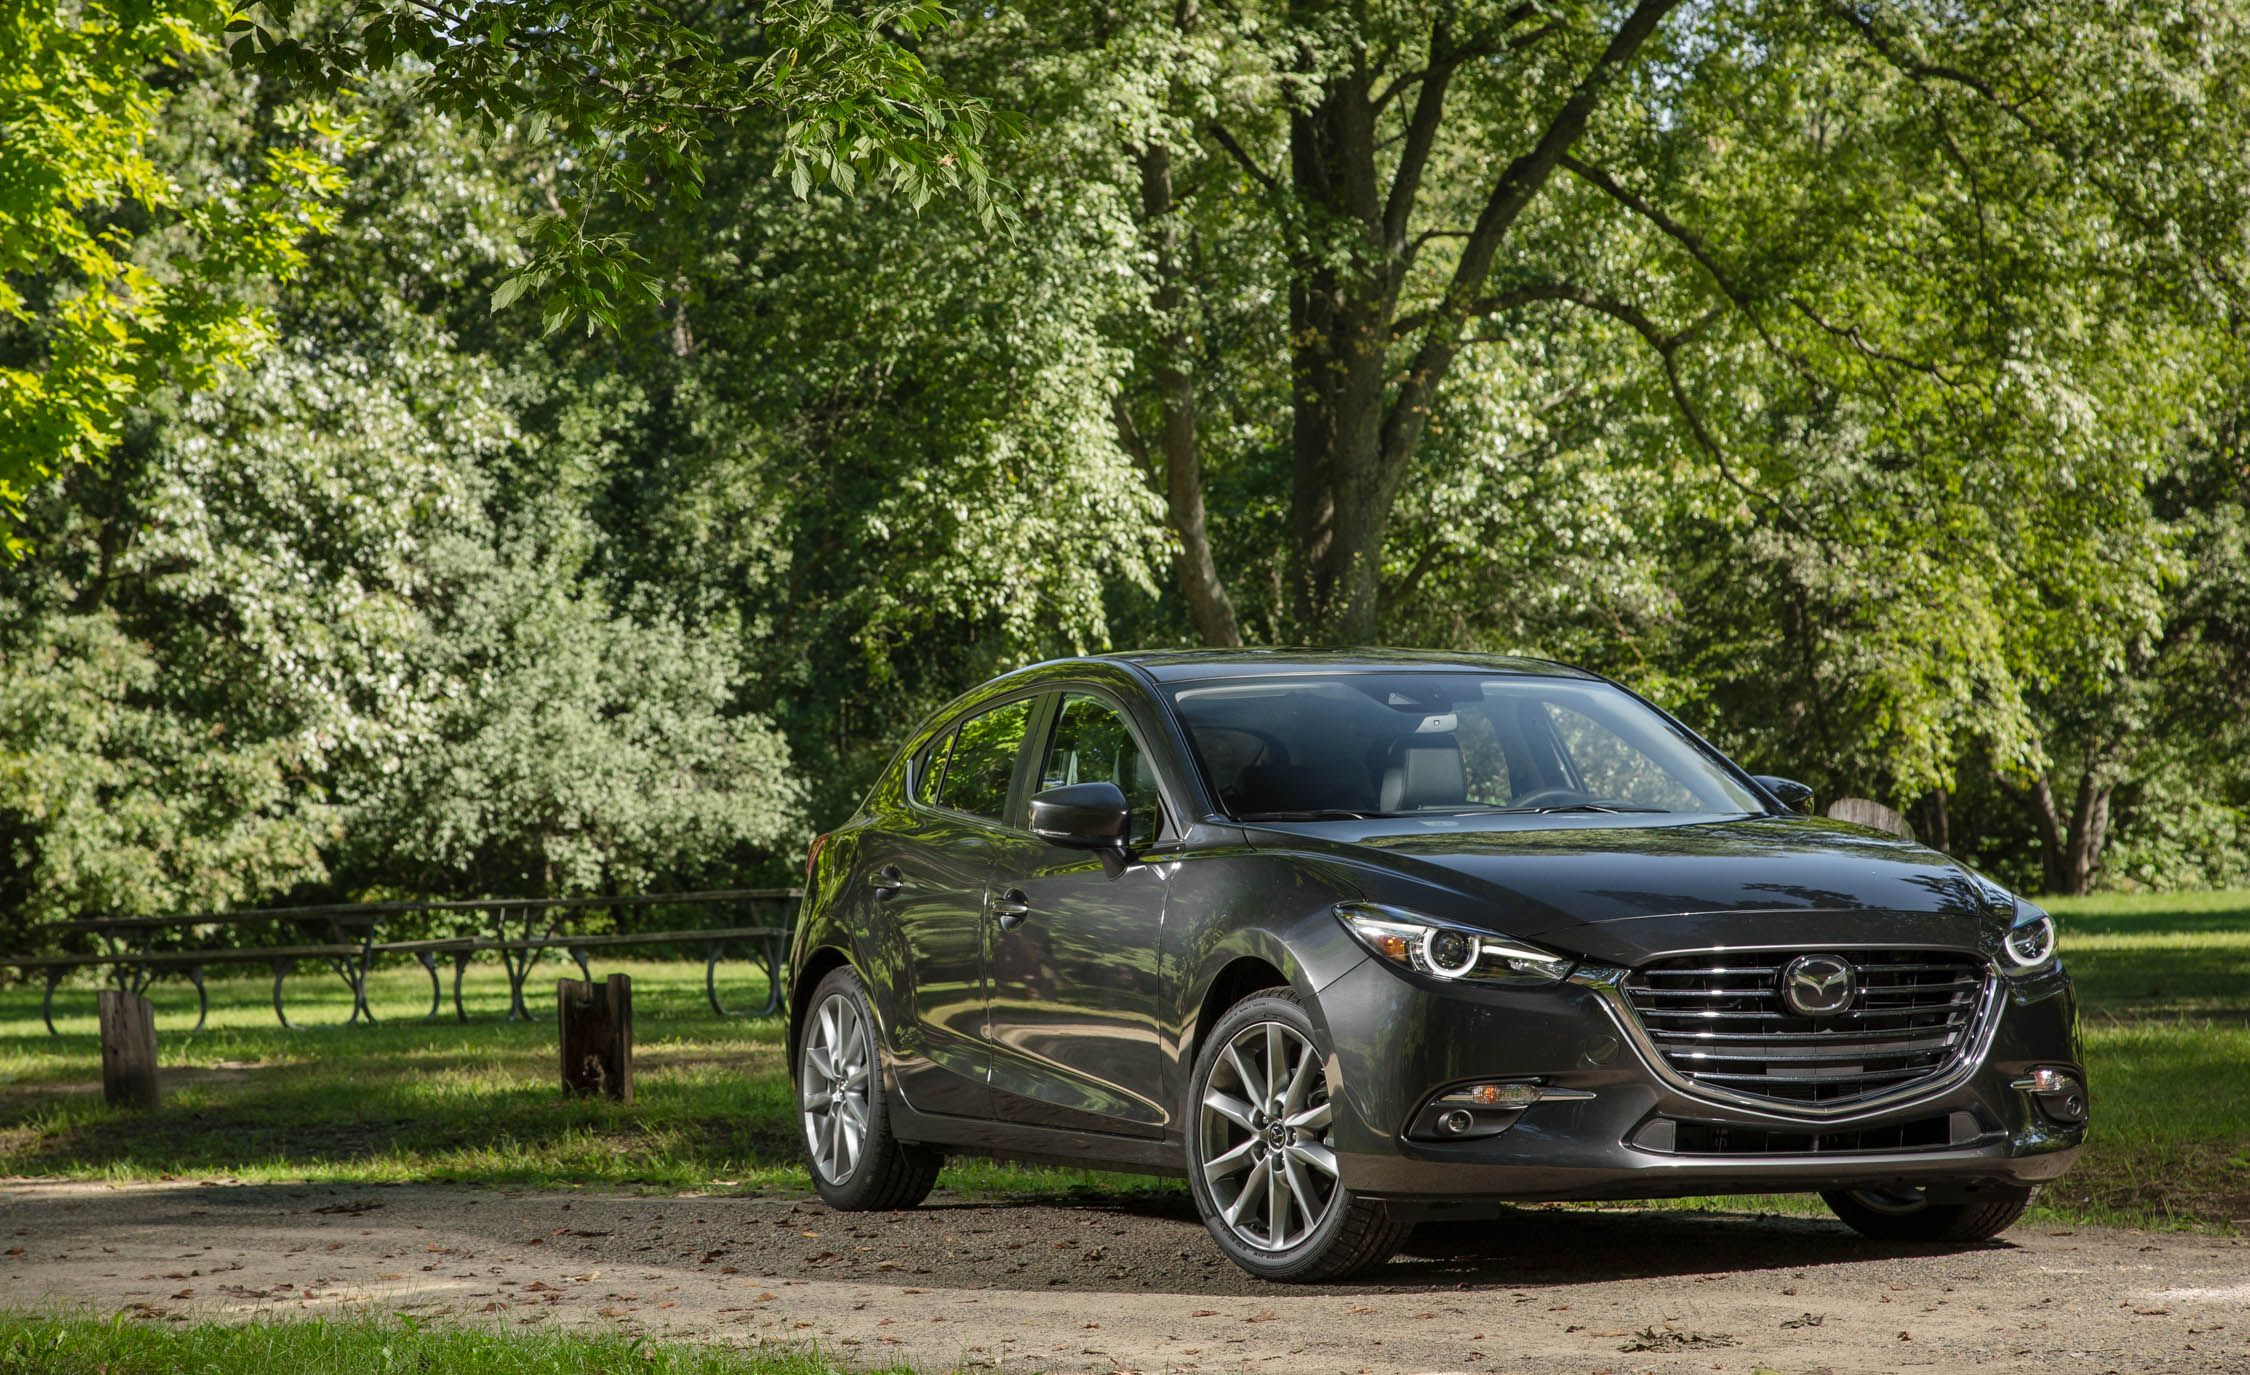 Đánh giá có nên mua Mazda 3 2017 cũ không